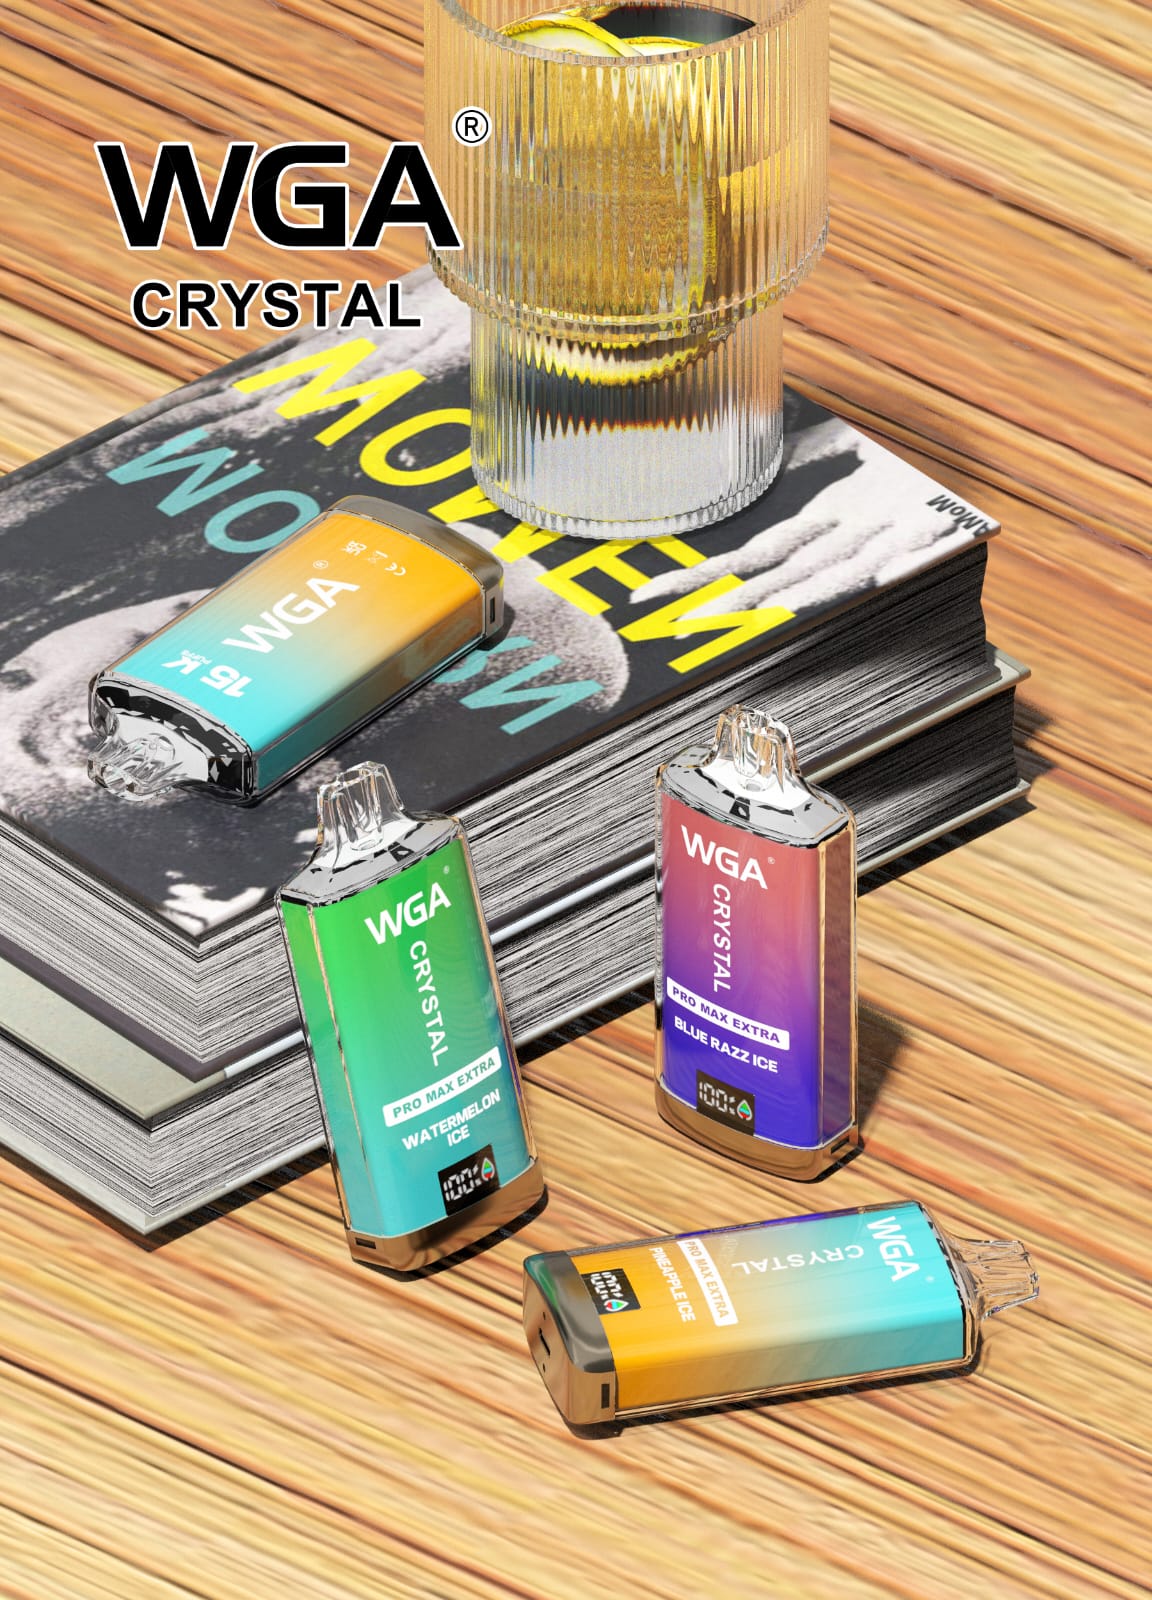 WGA Crystal Pro Max 15000 Puffs Disposable Vape-Box of 10